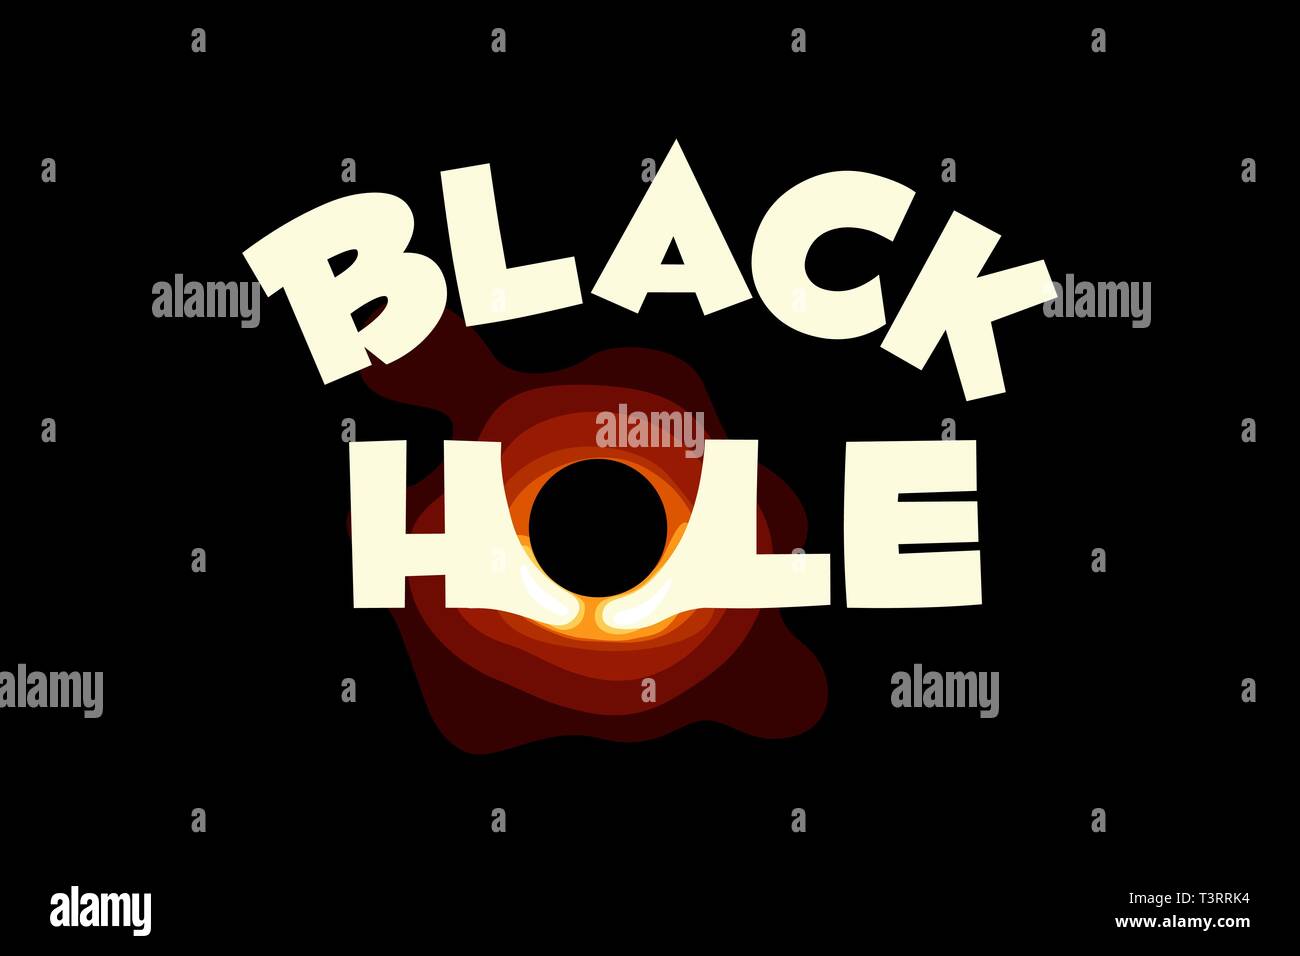 Schwarzes Loch Wörter Text im Universum. Wissenschaft flachbild Vector Illustration Stock Vektor